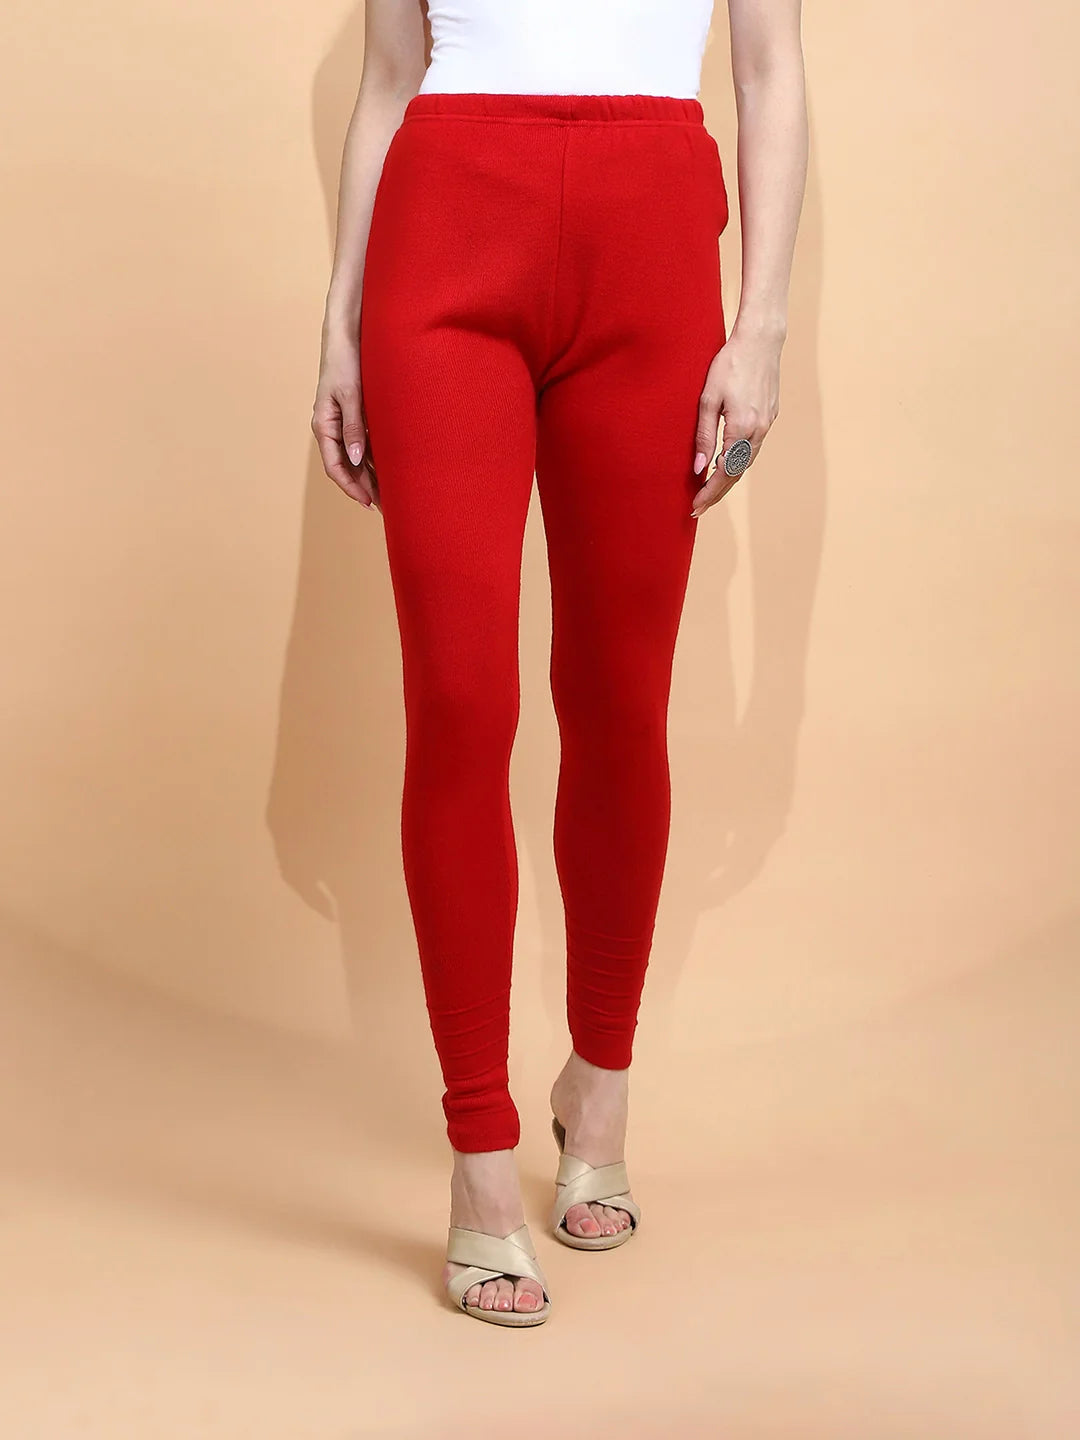 Red Woolen Blend Slim Fit Legging For Women